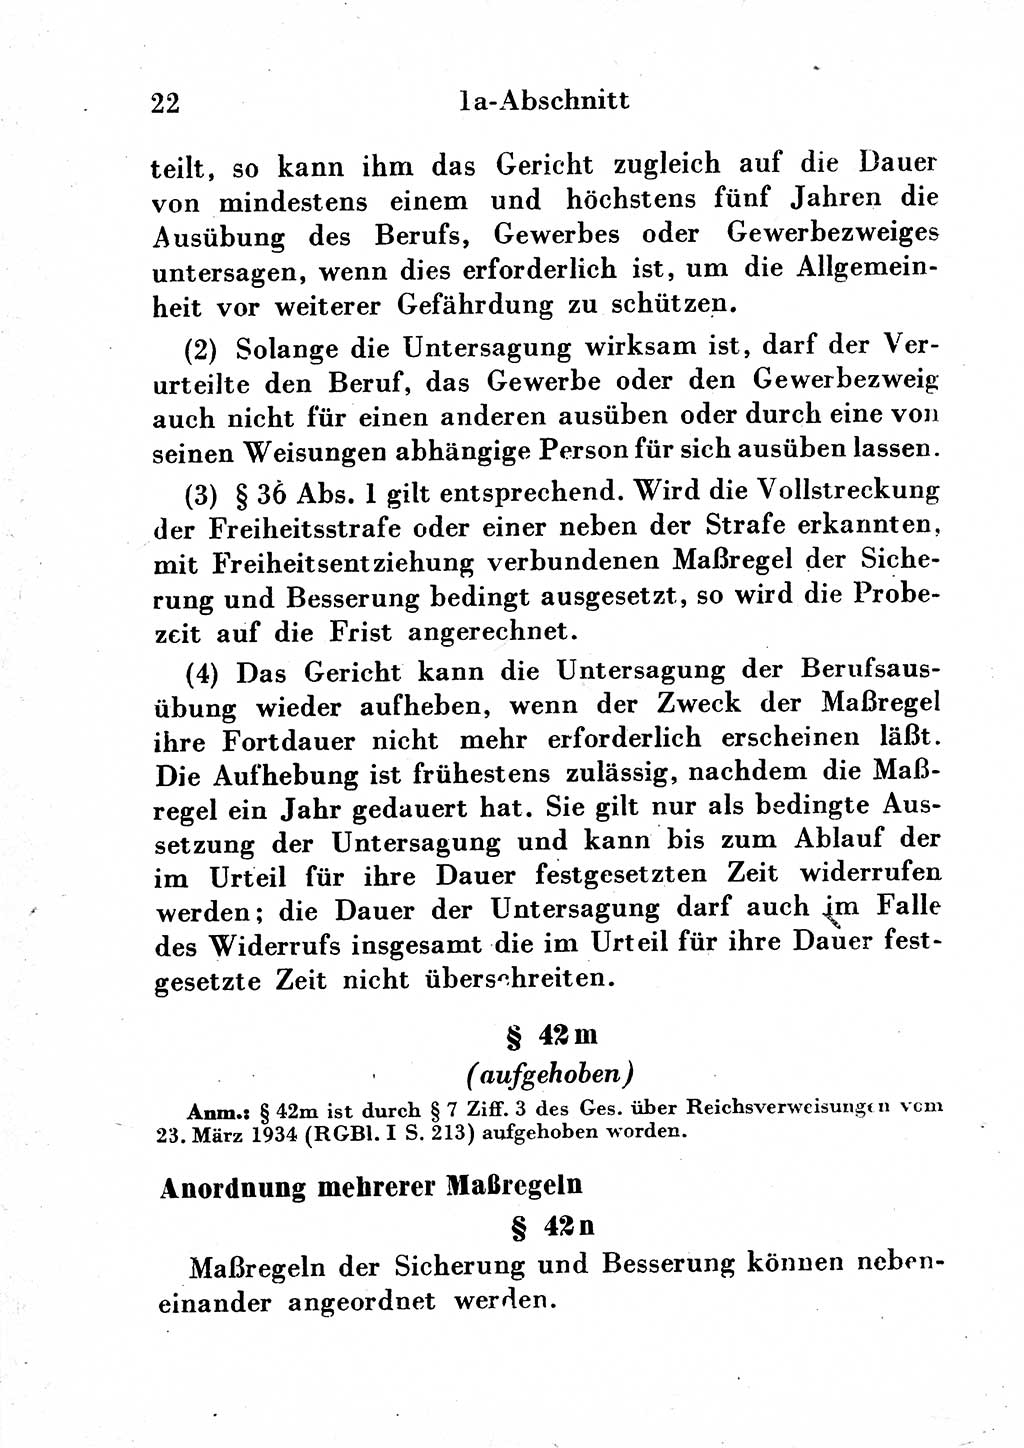 Strafgesetzbuch (StGB) und andere Strafgesetze [Deutsche Demokratische Republik (DDR)] 1954, Seite 22 (StGB Strafges. DDR 1954, S. 22)